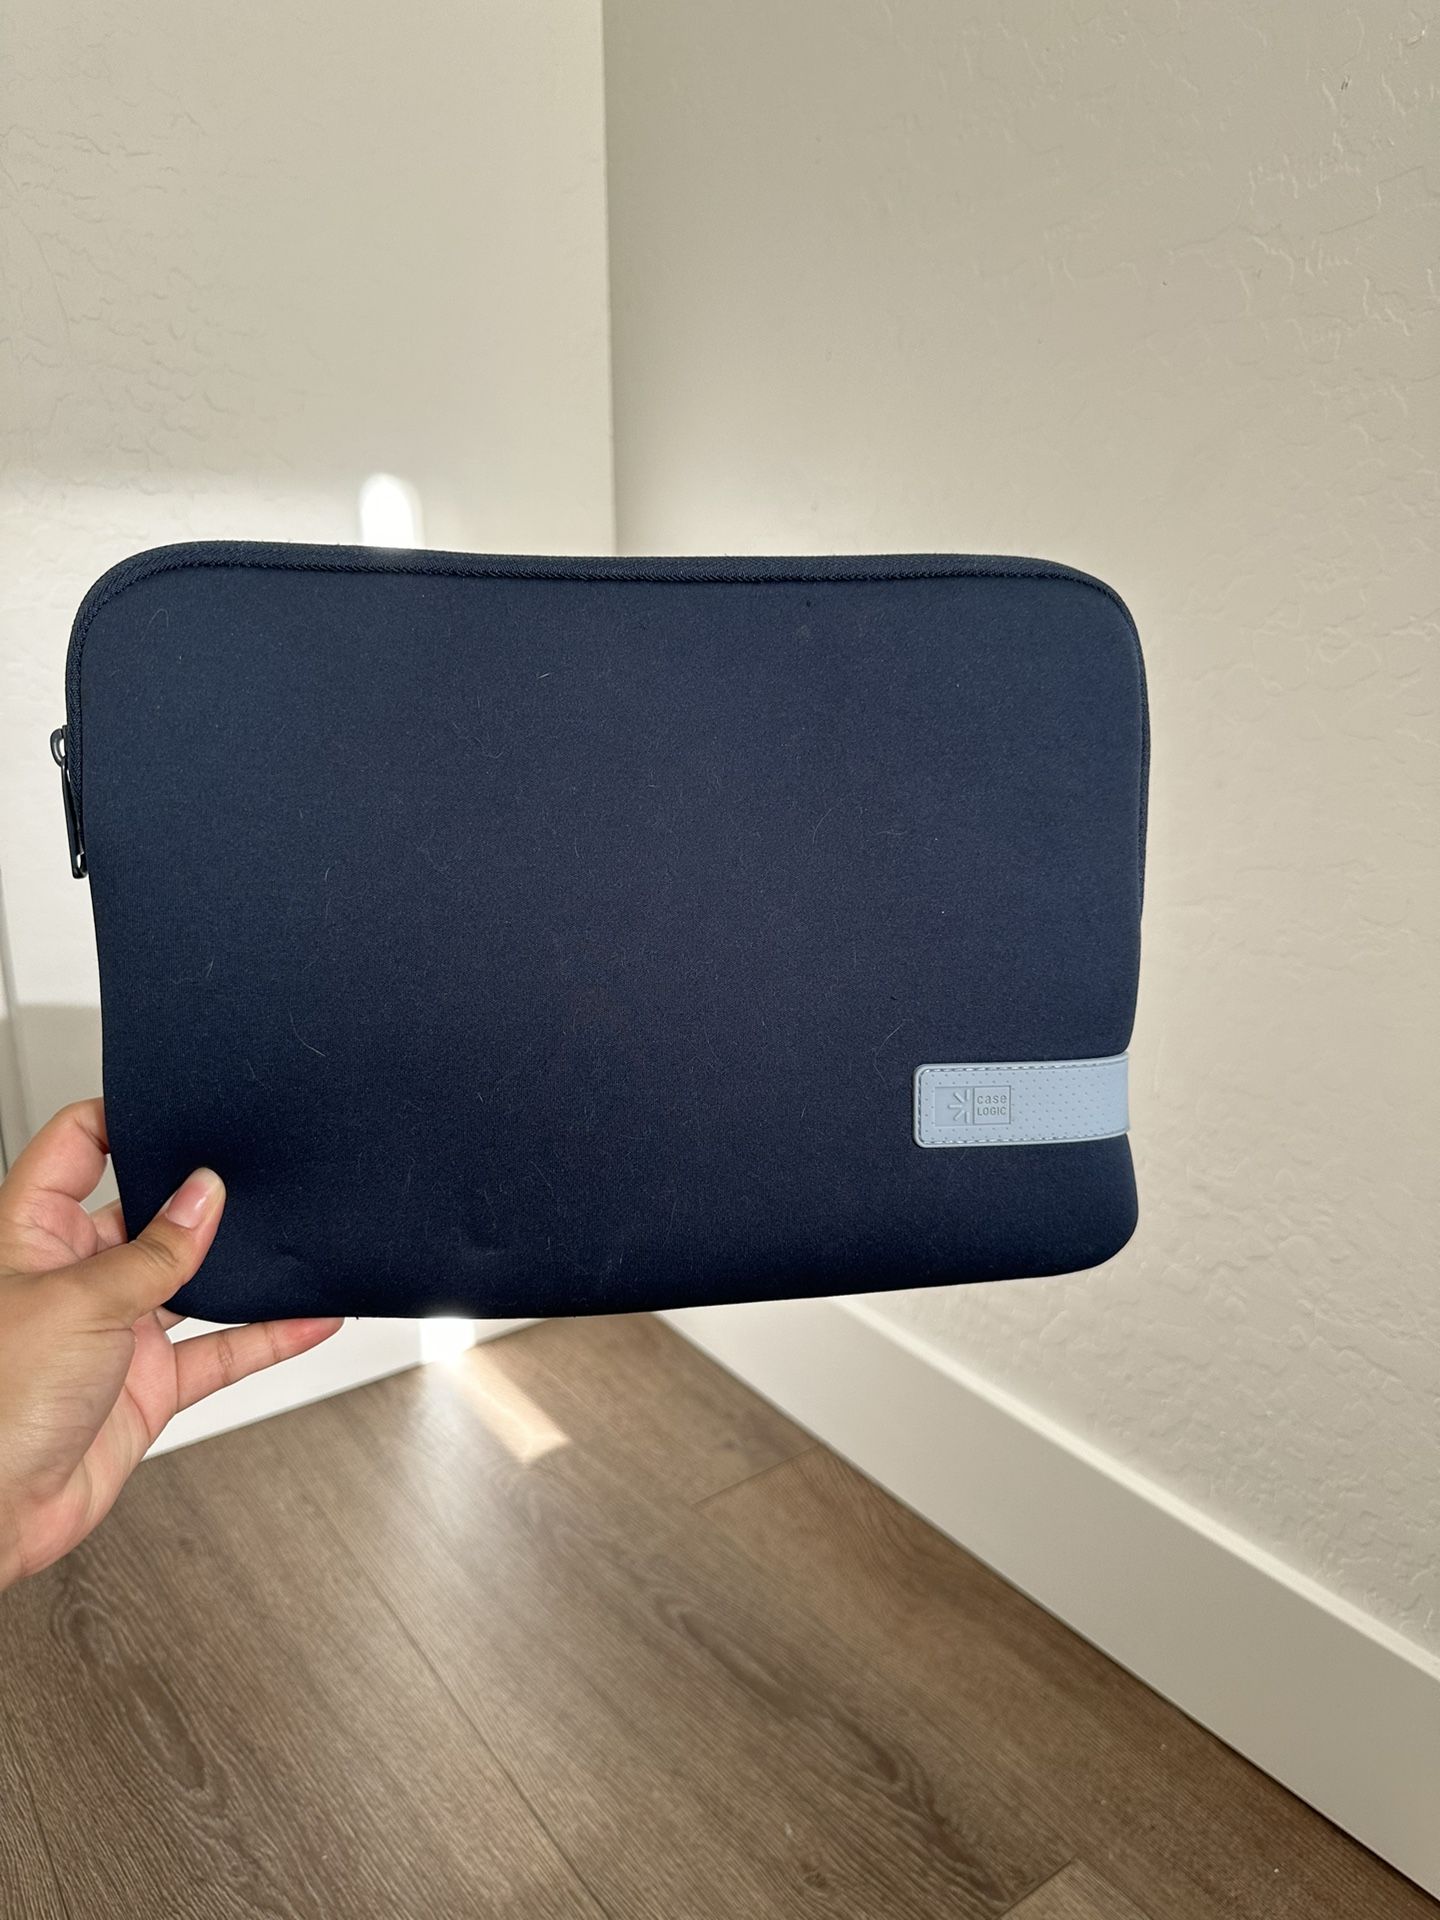 Blue laptop Case